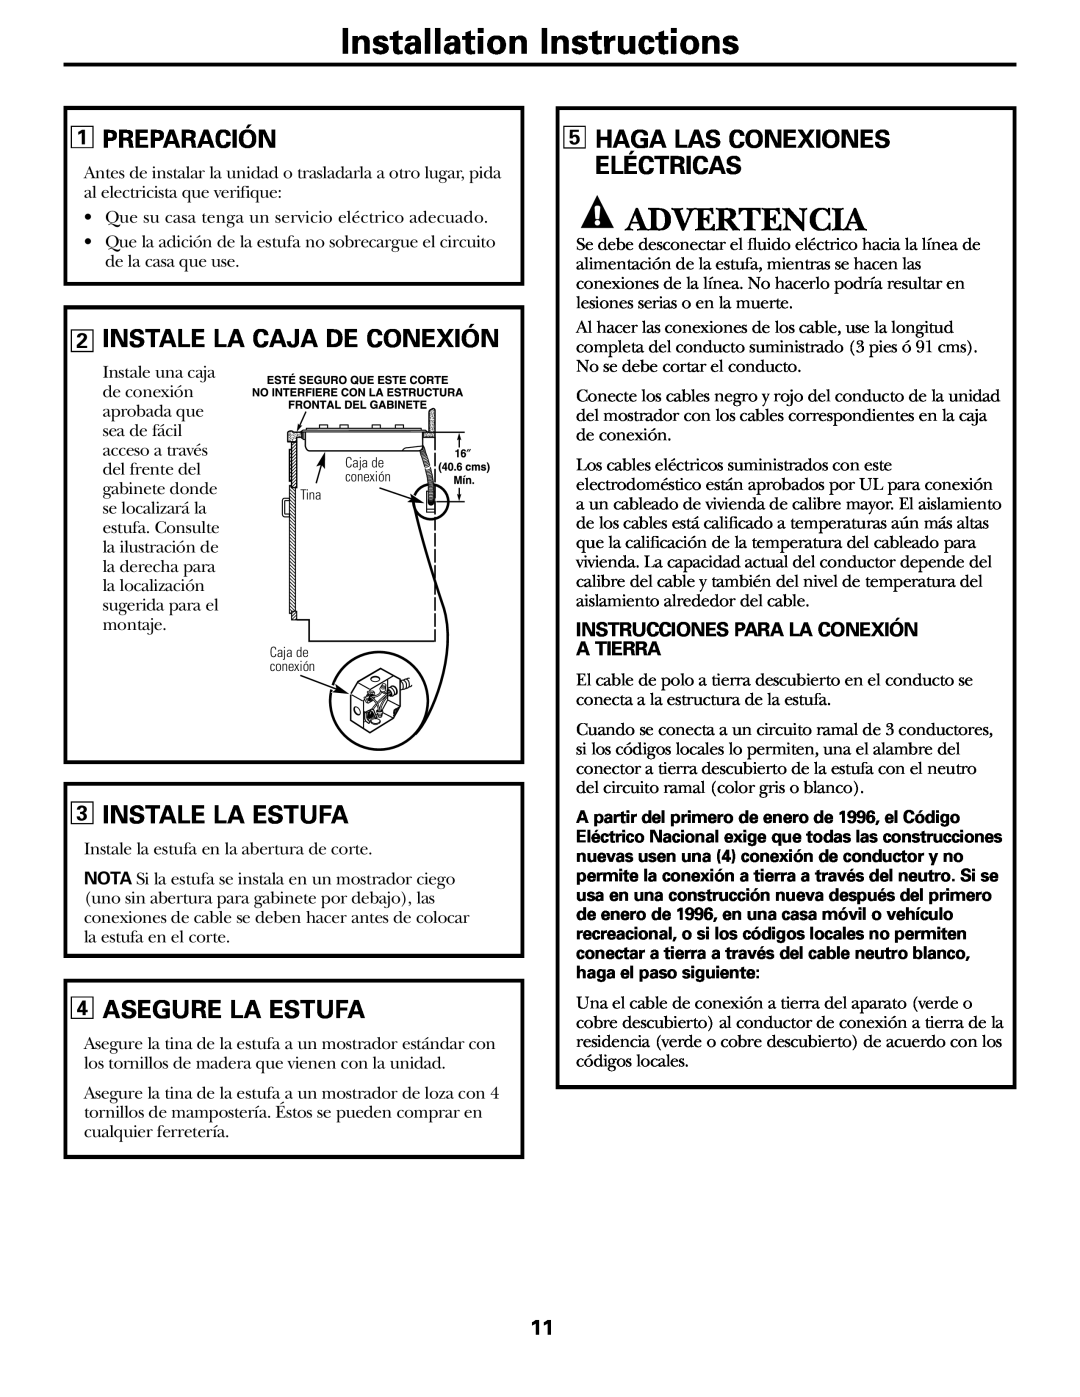 Hilti JP328, JP626 owner manual Advertencia, Preparación, Instale La Caja De Conexión, Instale La Estufa, Asegure La Estufa 